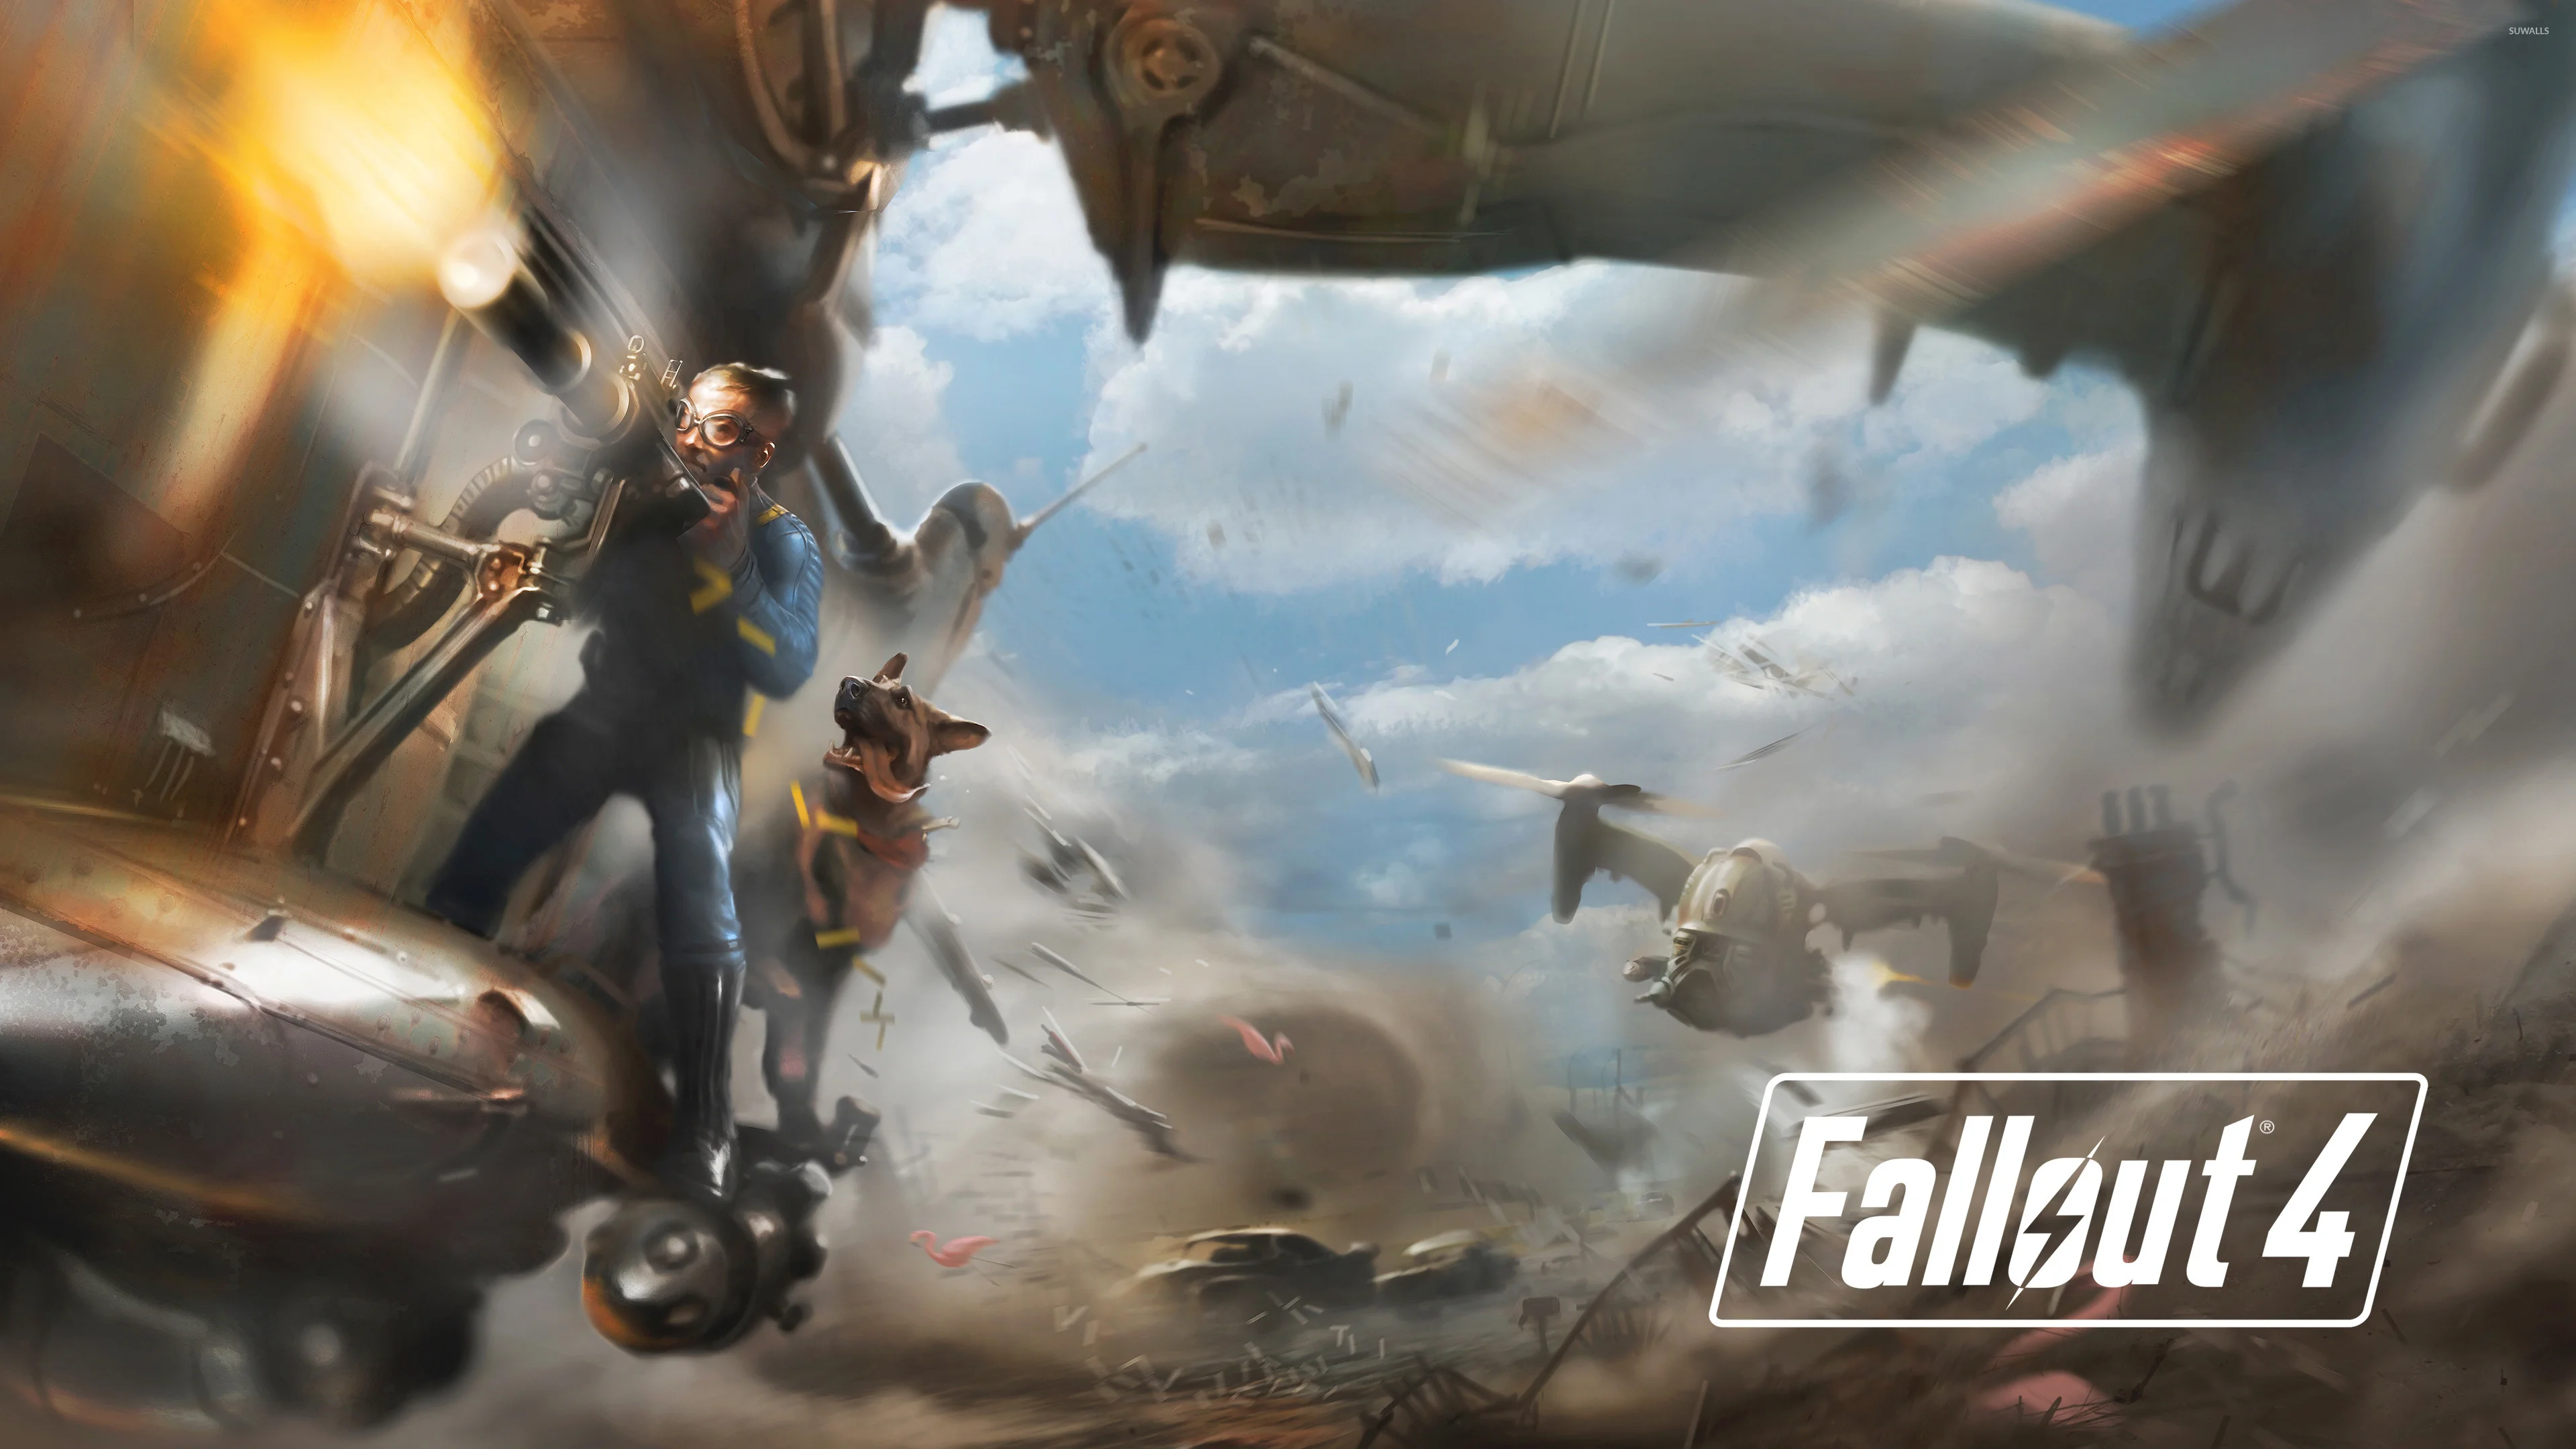 Battle in Fallout 4 wallpaper jpg